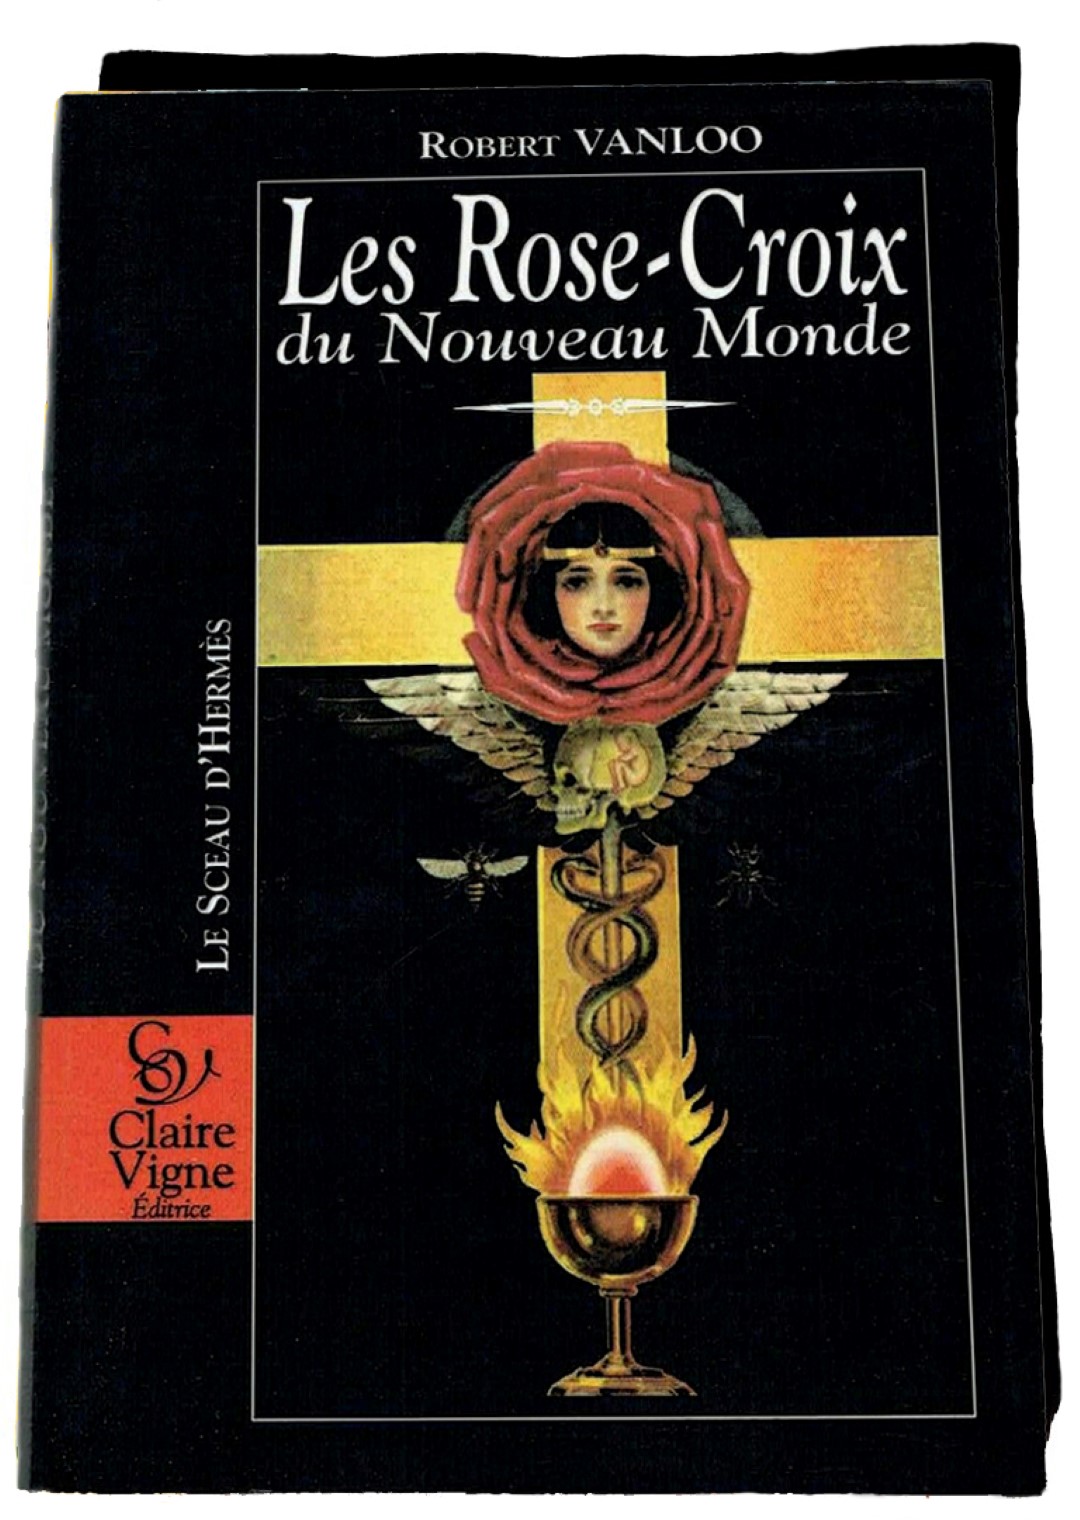 Robert Vanloo, Les Rose-Croix du Nouveau Monde, Paris 1996